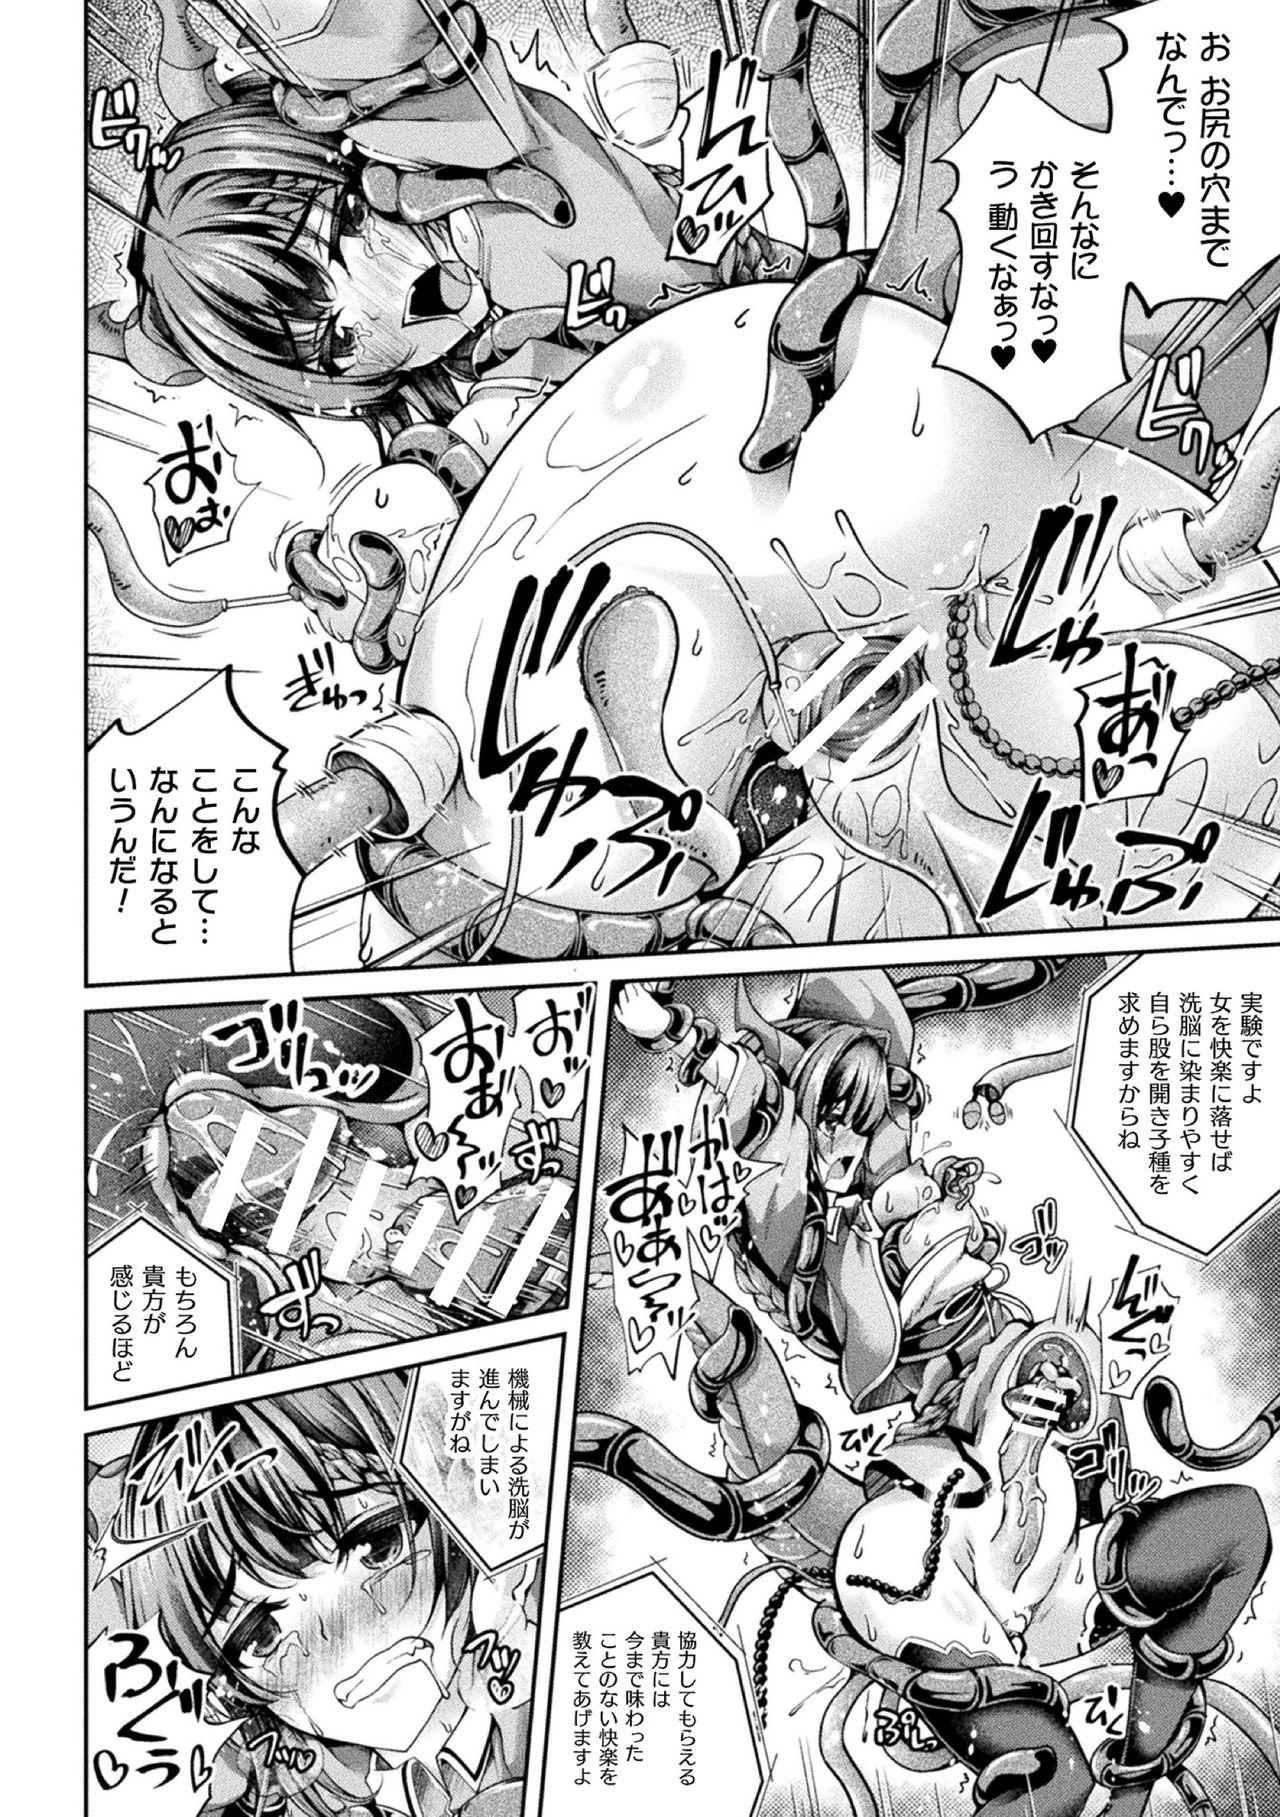 2D Comic Magazine Kikaikanaku Oti Ryouzyoku Masin Ni Kussi Otiru Seigi No Hiroin Vol. 1 28